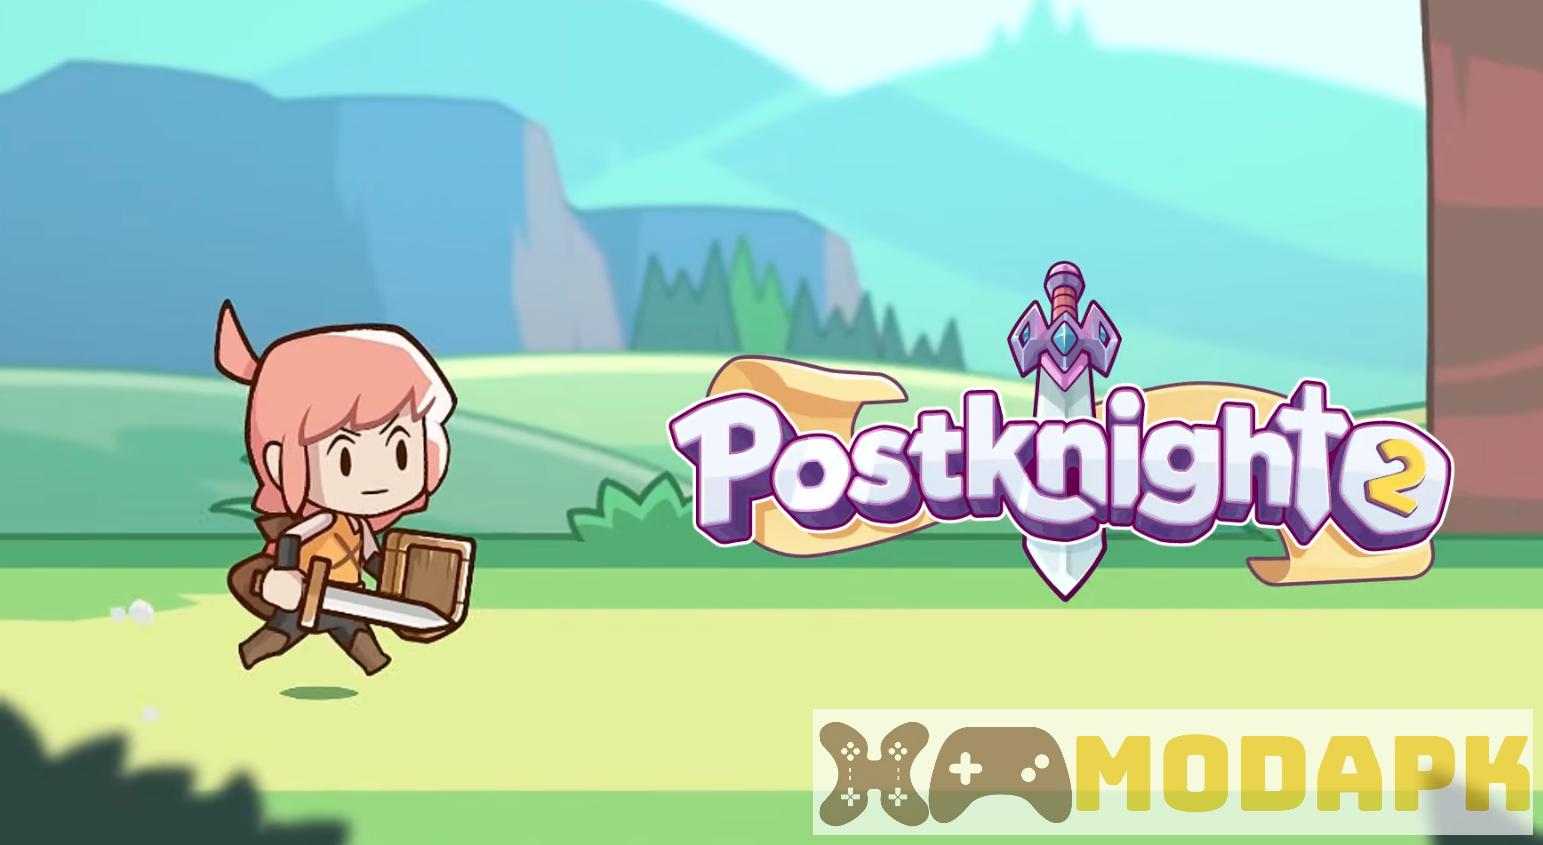 Postknight 2 APK MOD (Menu Pro, Tiền Full, Kim Cương, Không Bị Giết, Giết Phát Một, Tốc Độ x5) 2.4.5